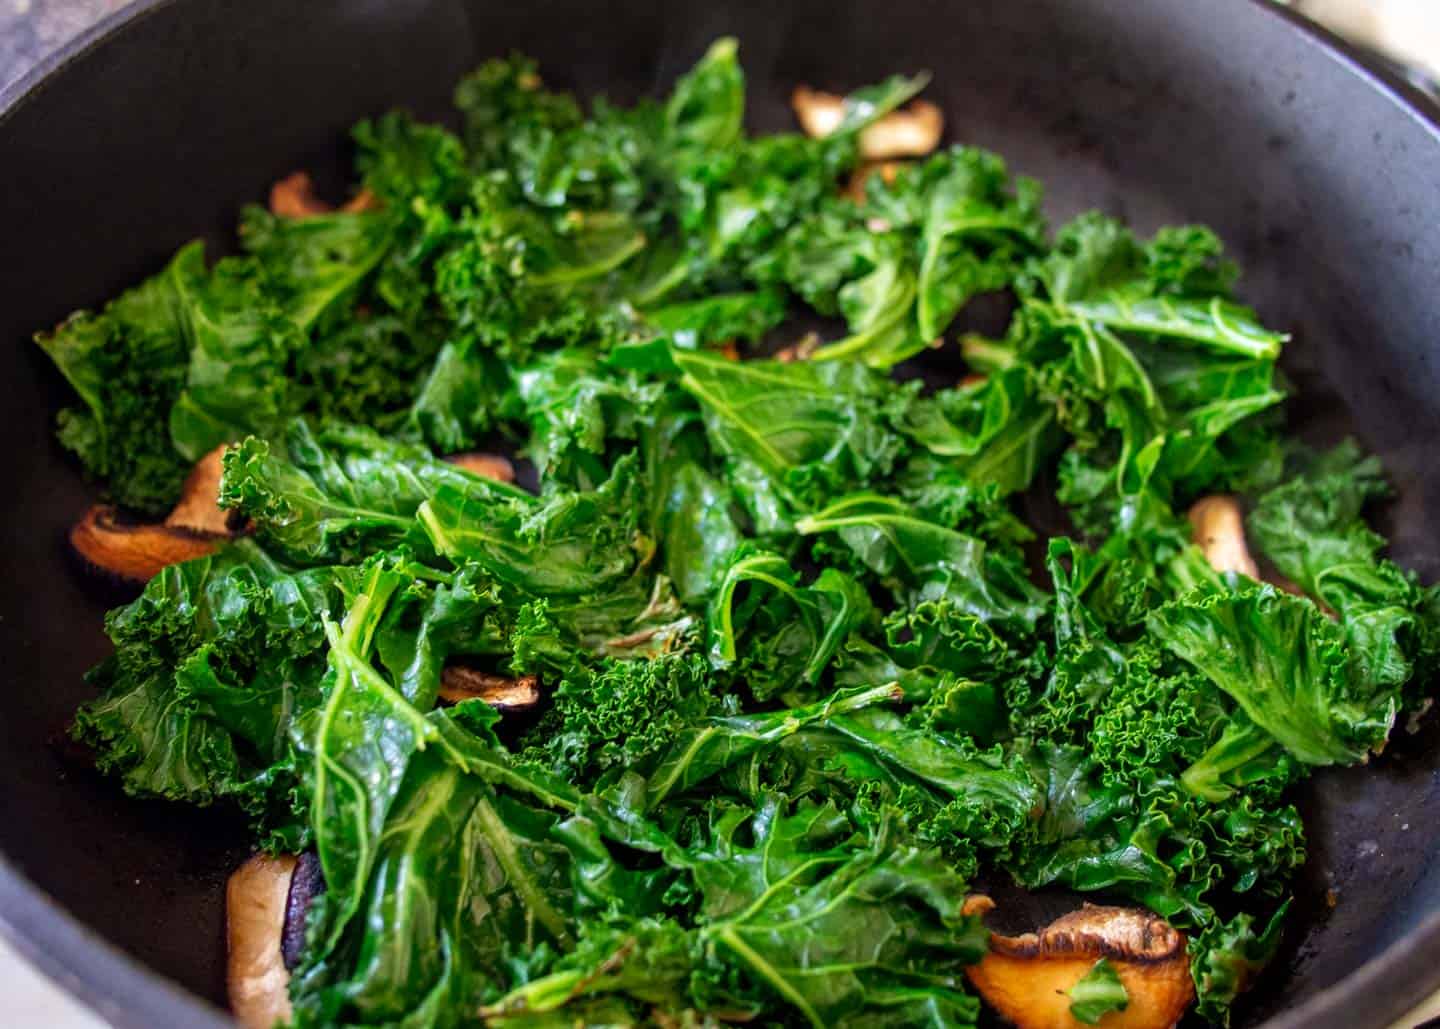 Mushrooms and kale in frying pan